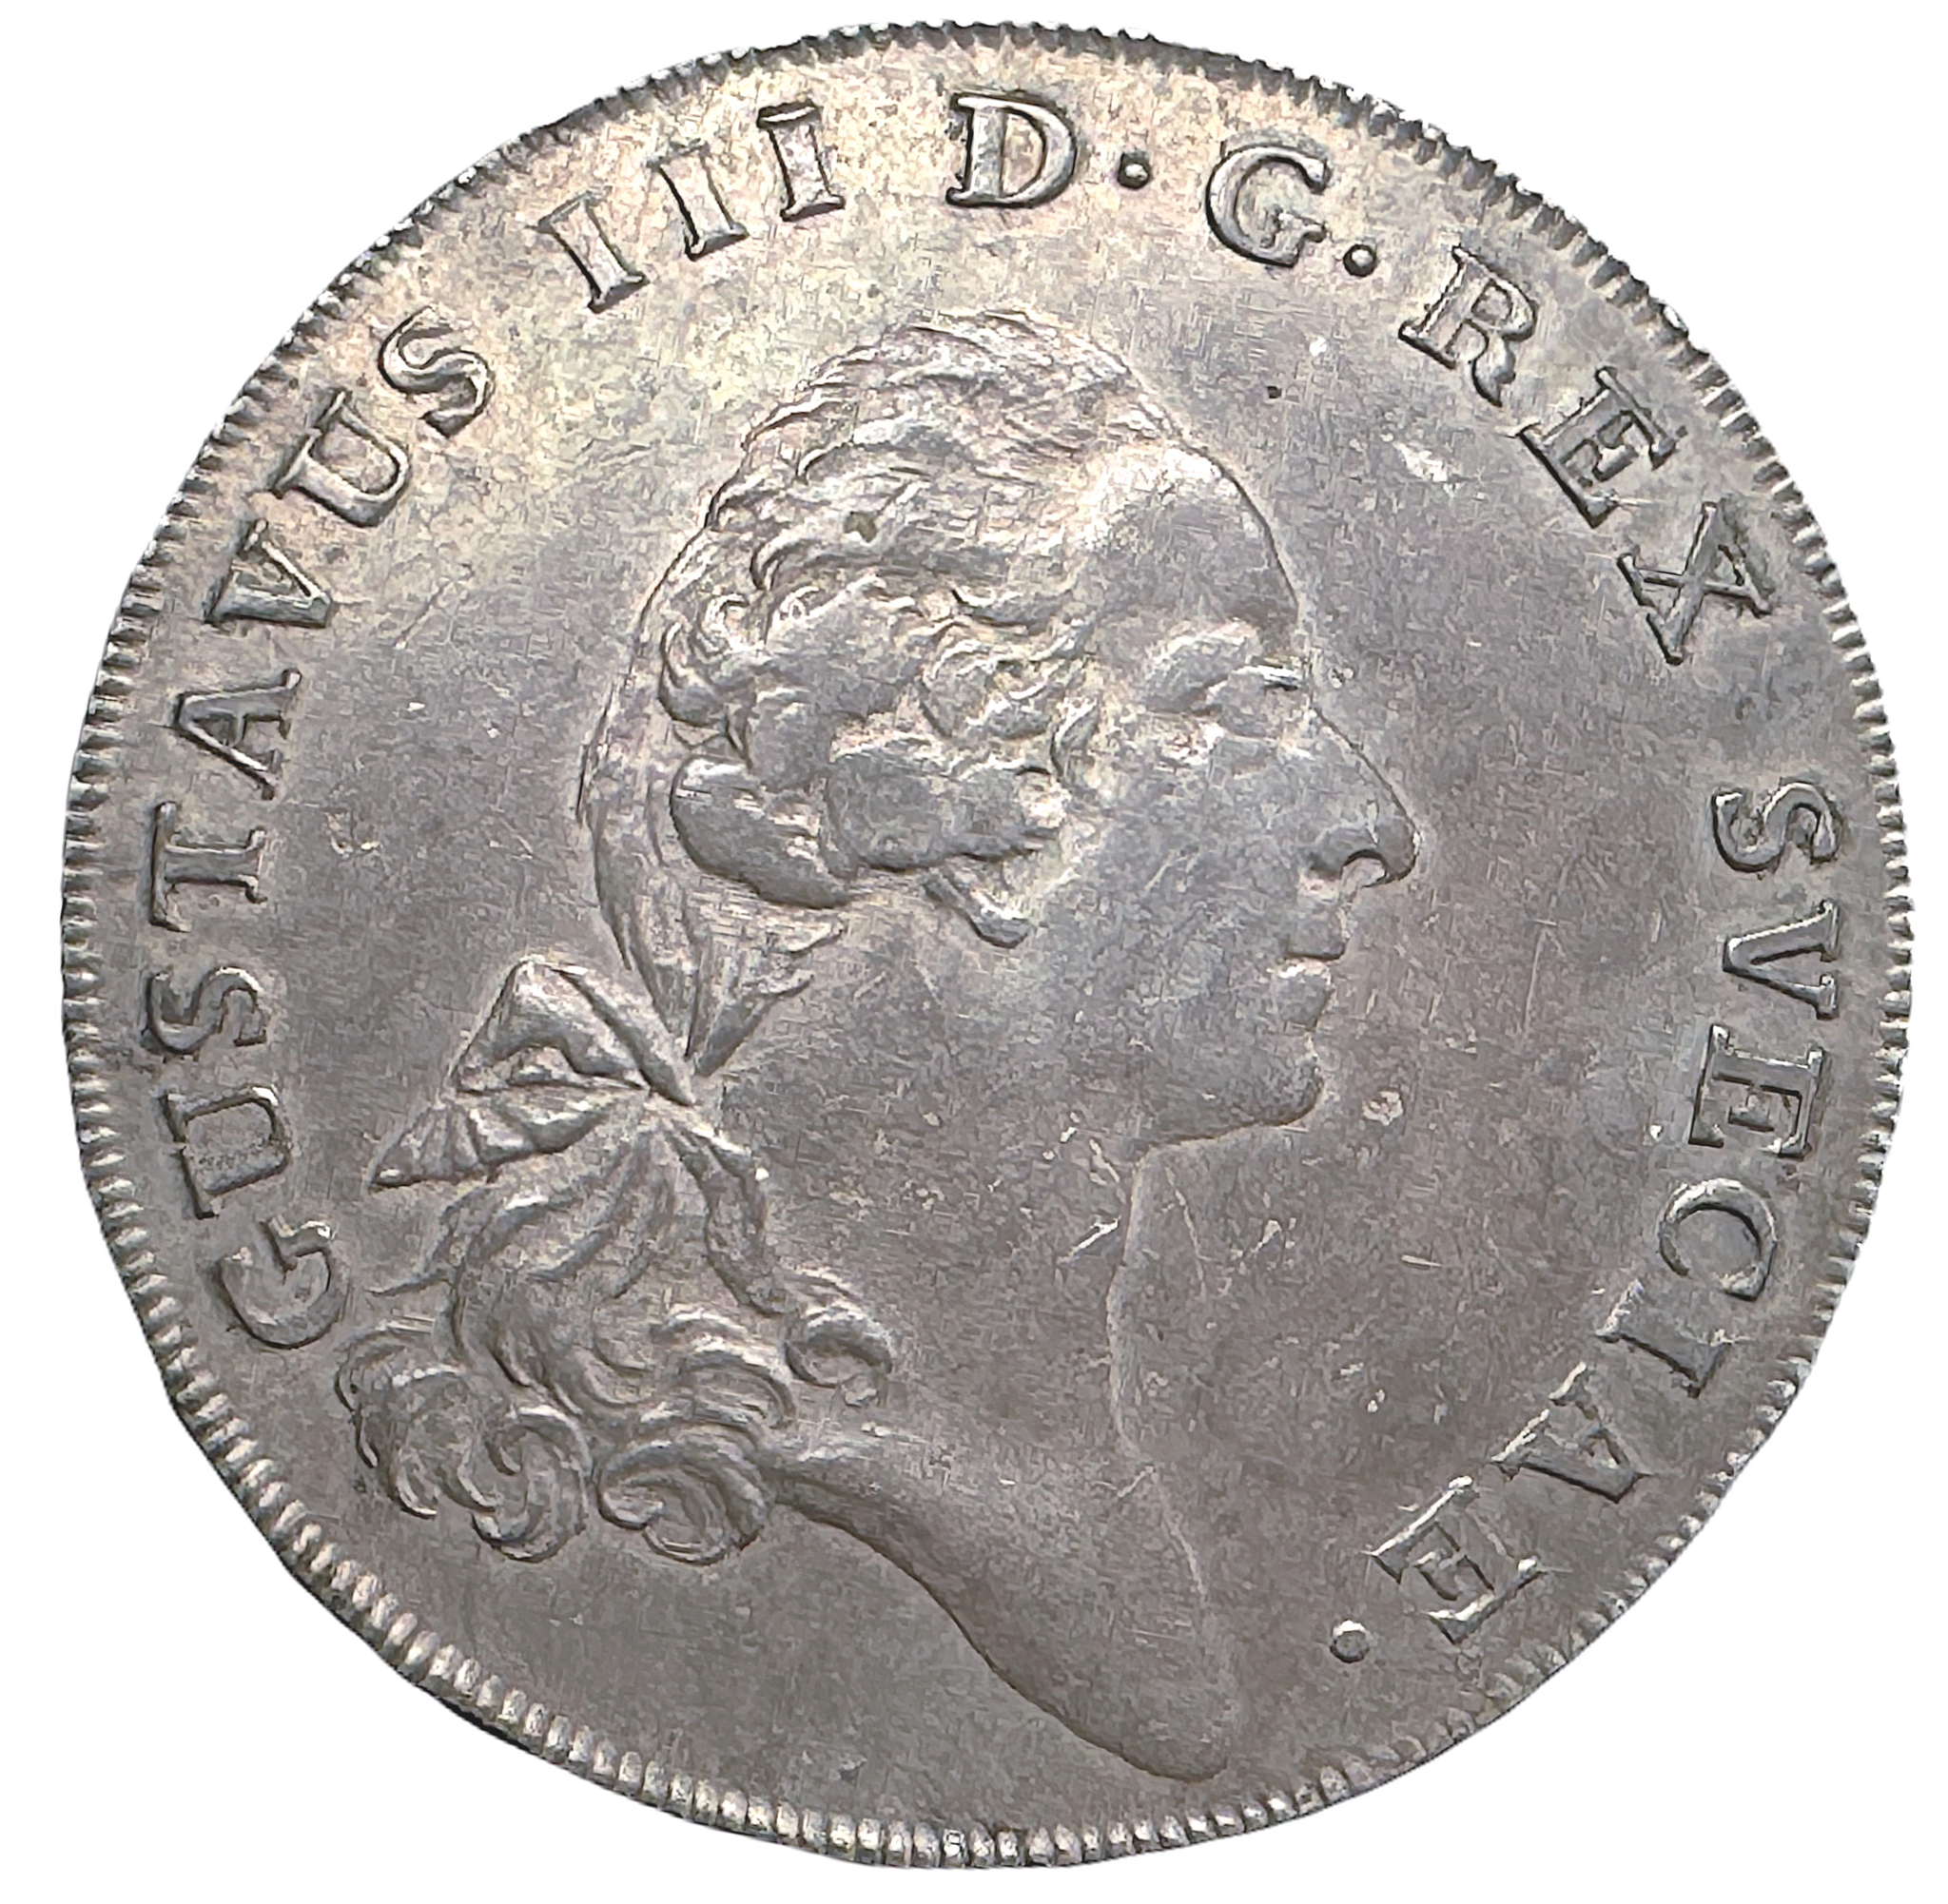 Gustav III - Riksdaler 1773 med 1773-års bild - Vackert naturellt exemplar med bevarad bottenstriering